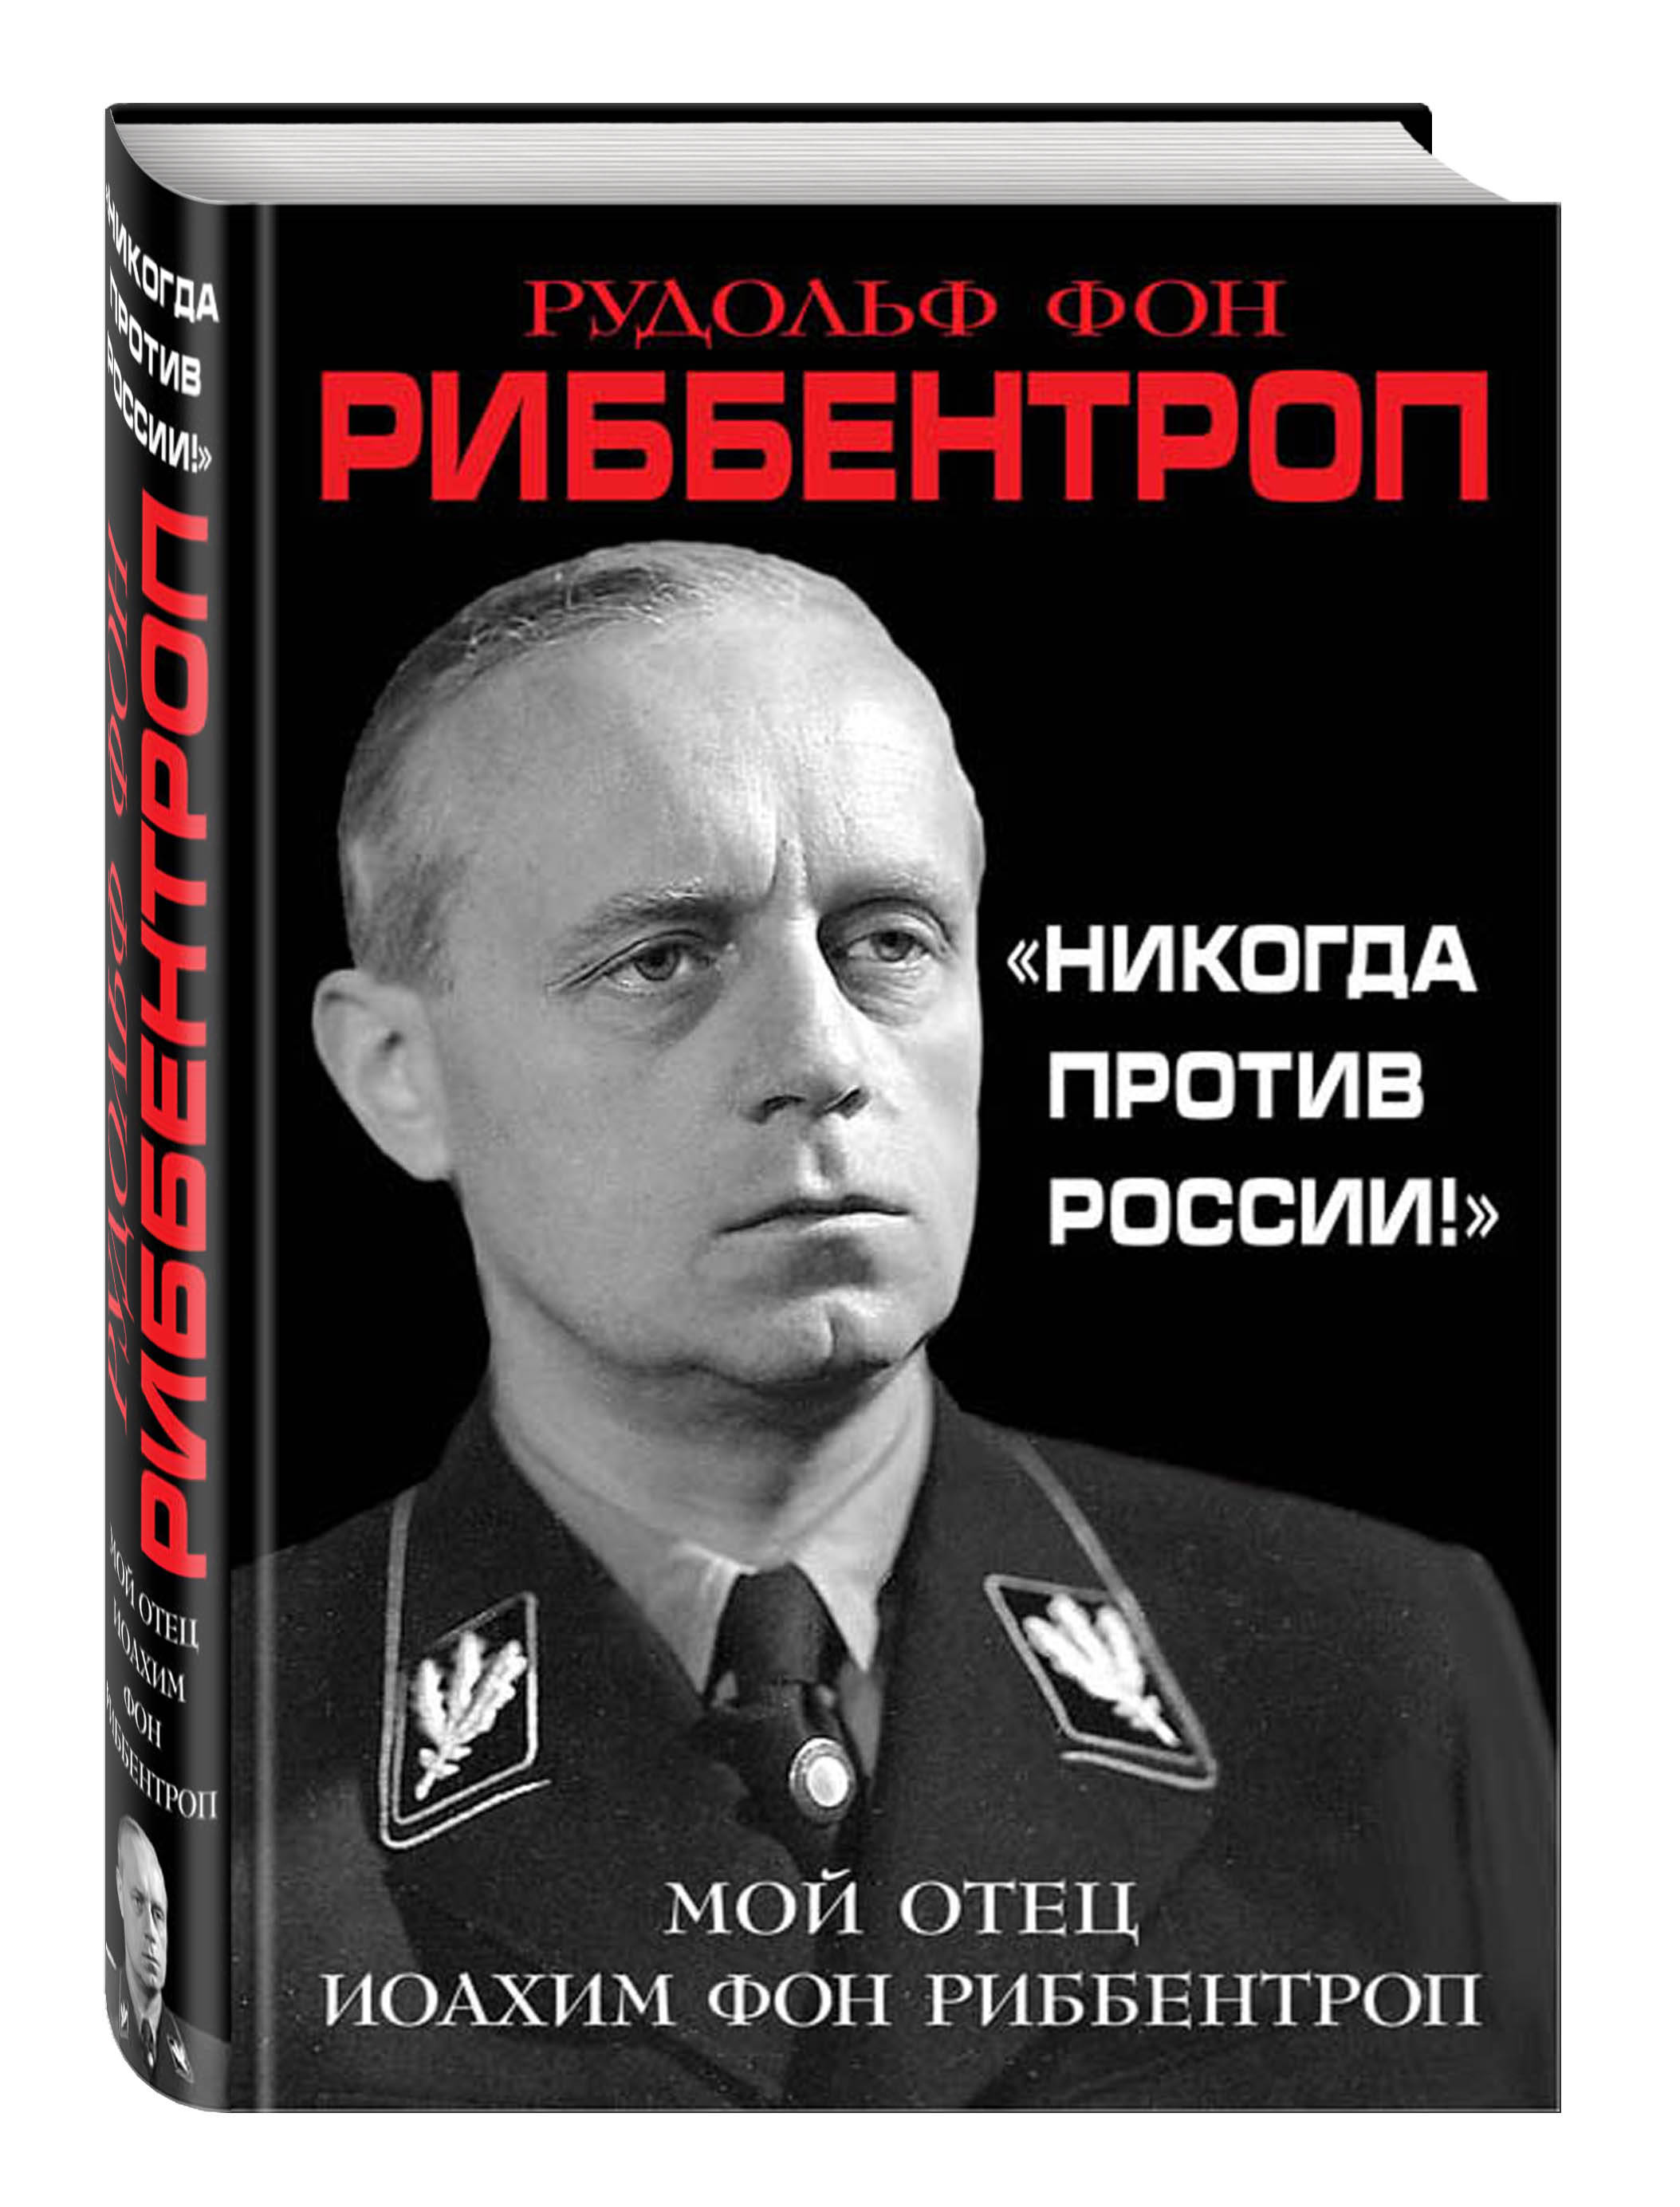 https://cdn.eksmo.ru/v2/ITD000000000809584/COVER/cover13d.jpg